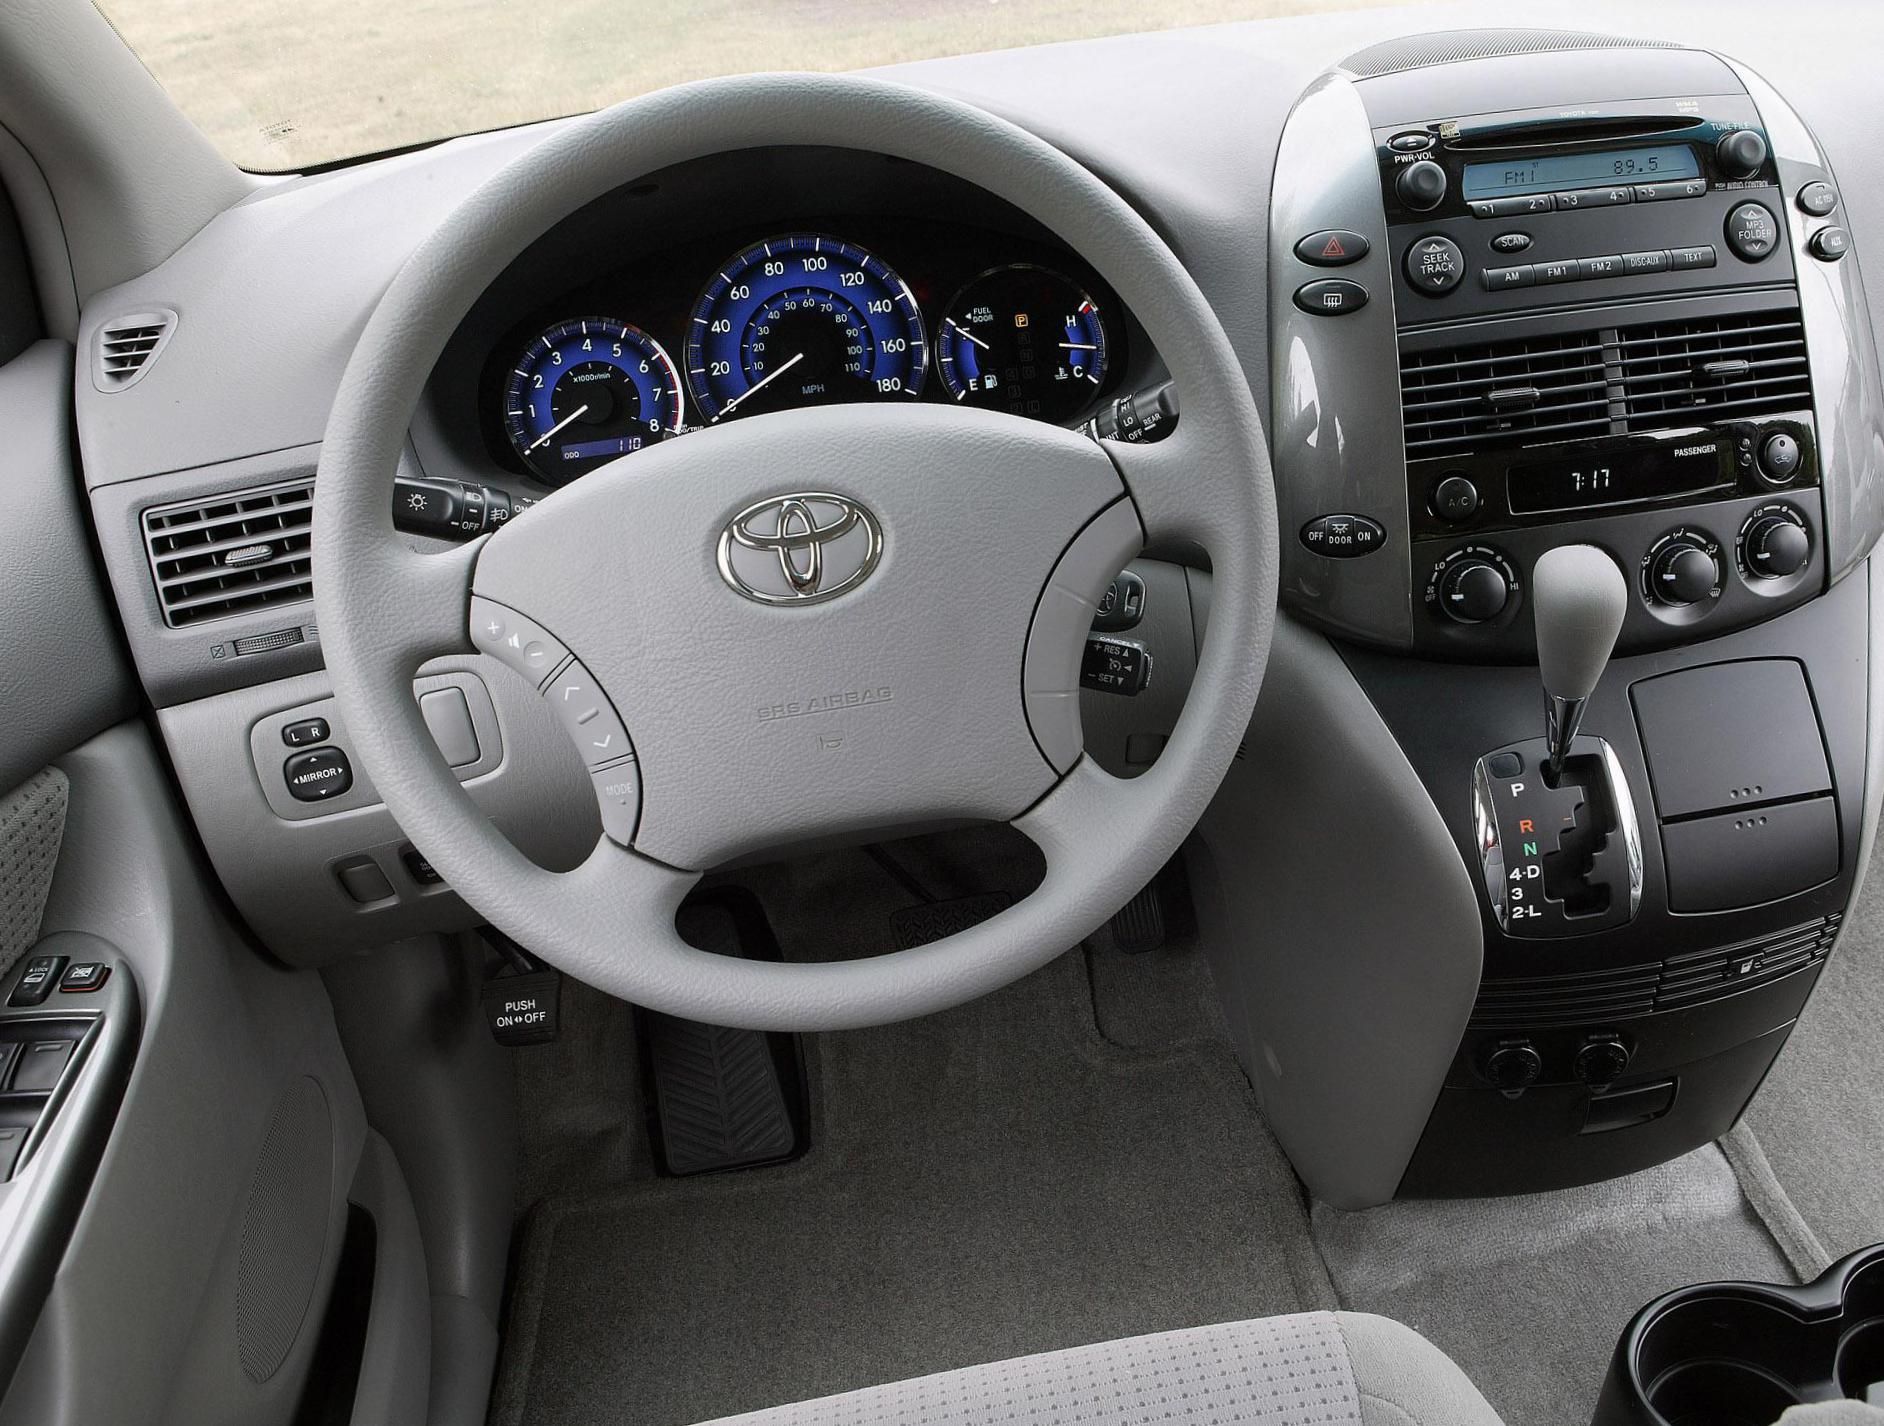 Toyota Sienna concept 2012